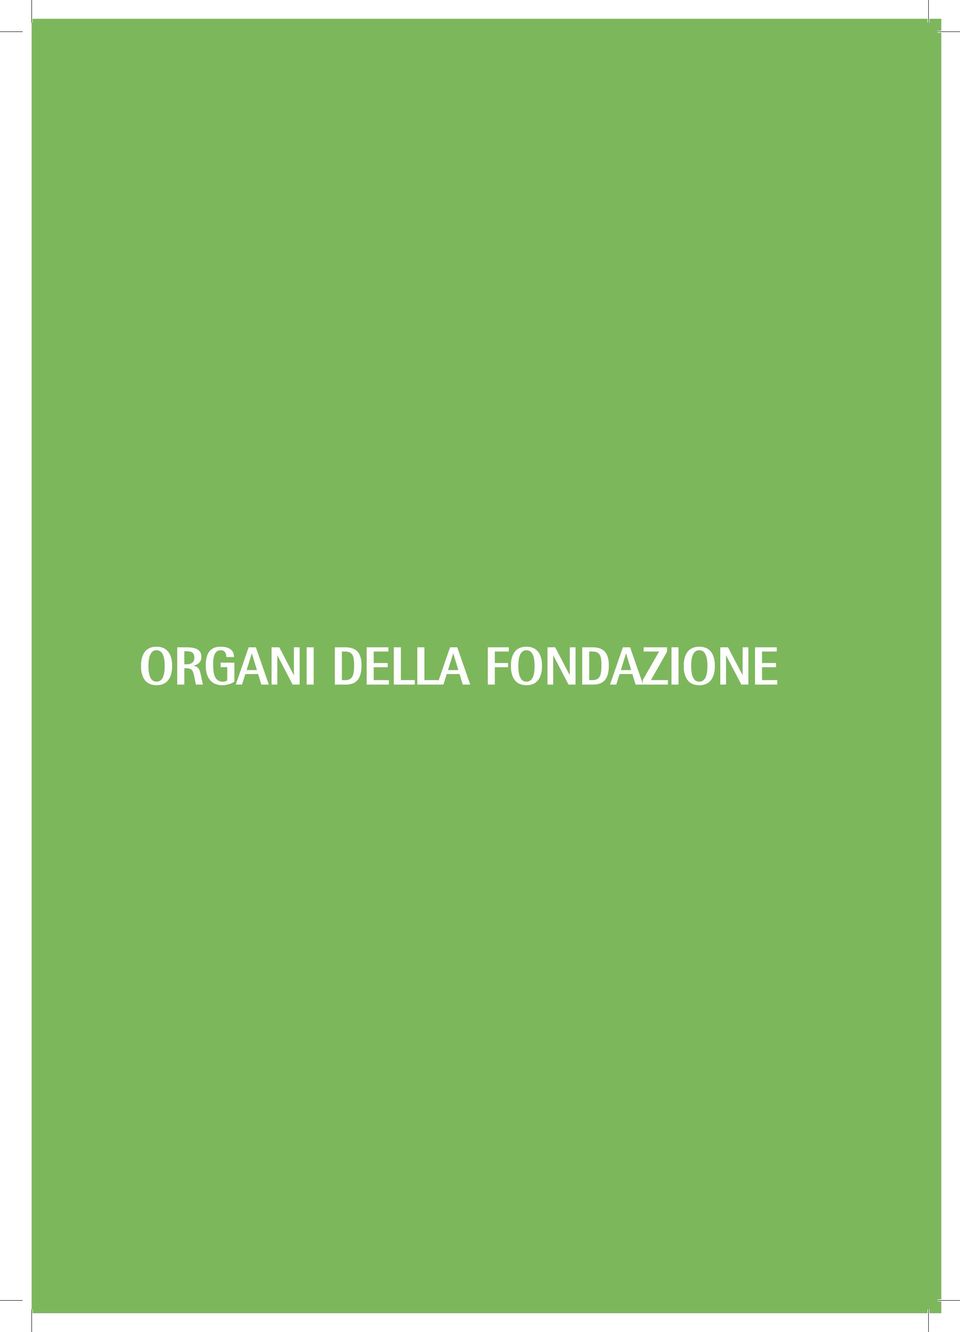 Organi della